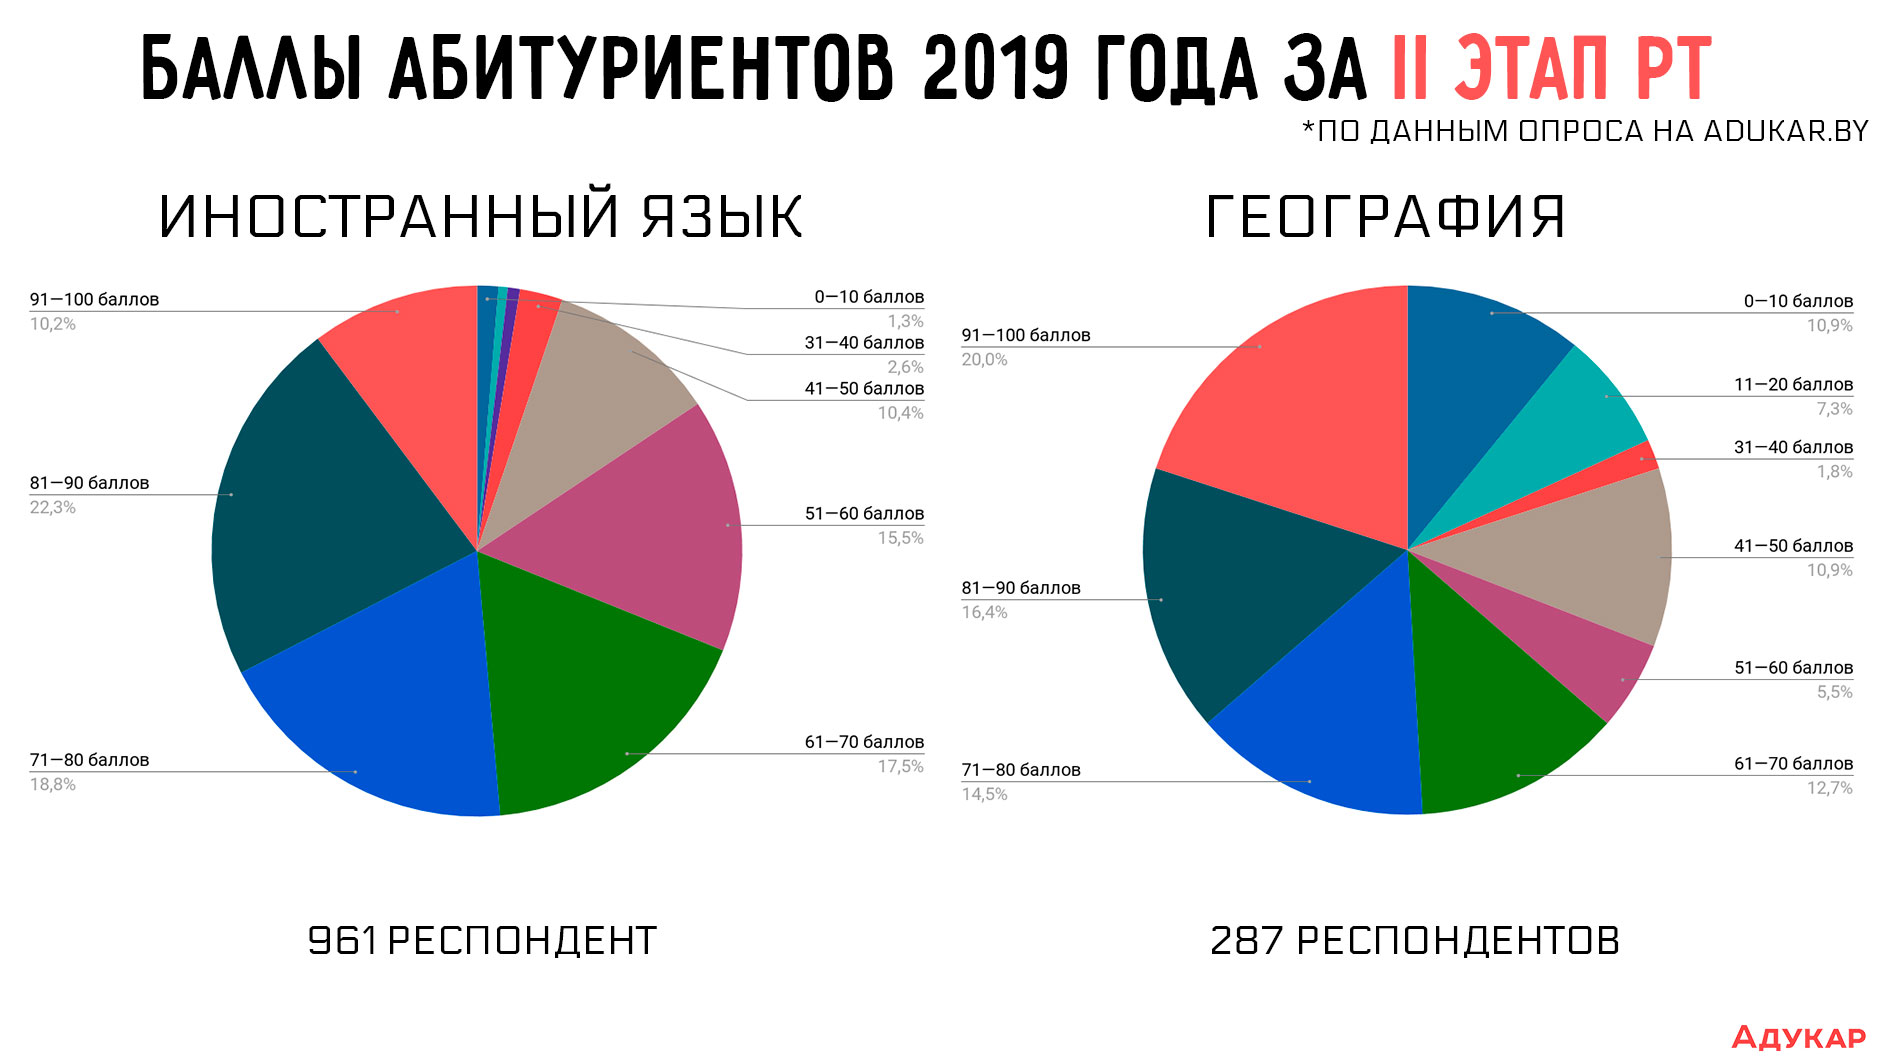 Как видно на инфографике государственные языки абитуриенты 2019 года в большинстве случаев сдают выше 50 баллов